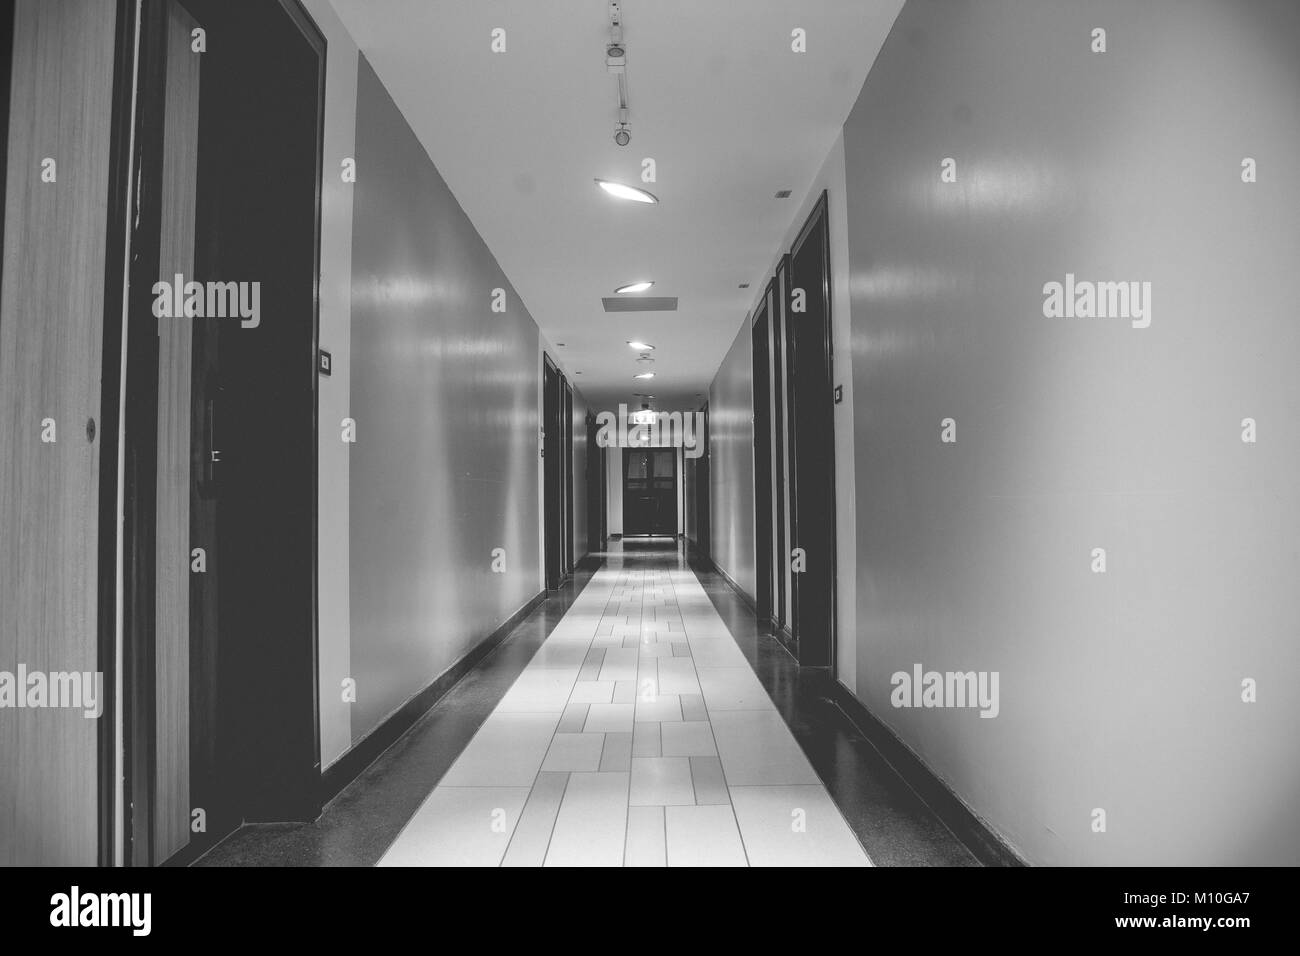 Immagine in bianco e nero di architettura lunga passerella o sentiero all'interno di edificio fiancheggiato con porta di legno e muro. Foto Stock